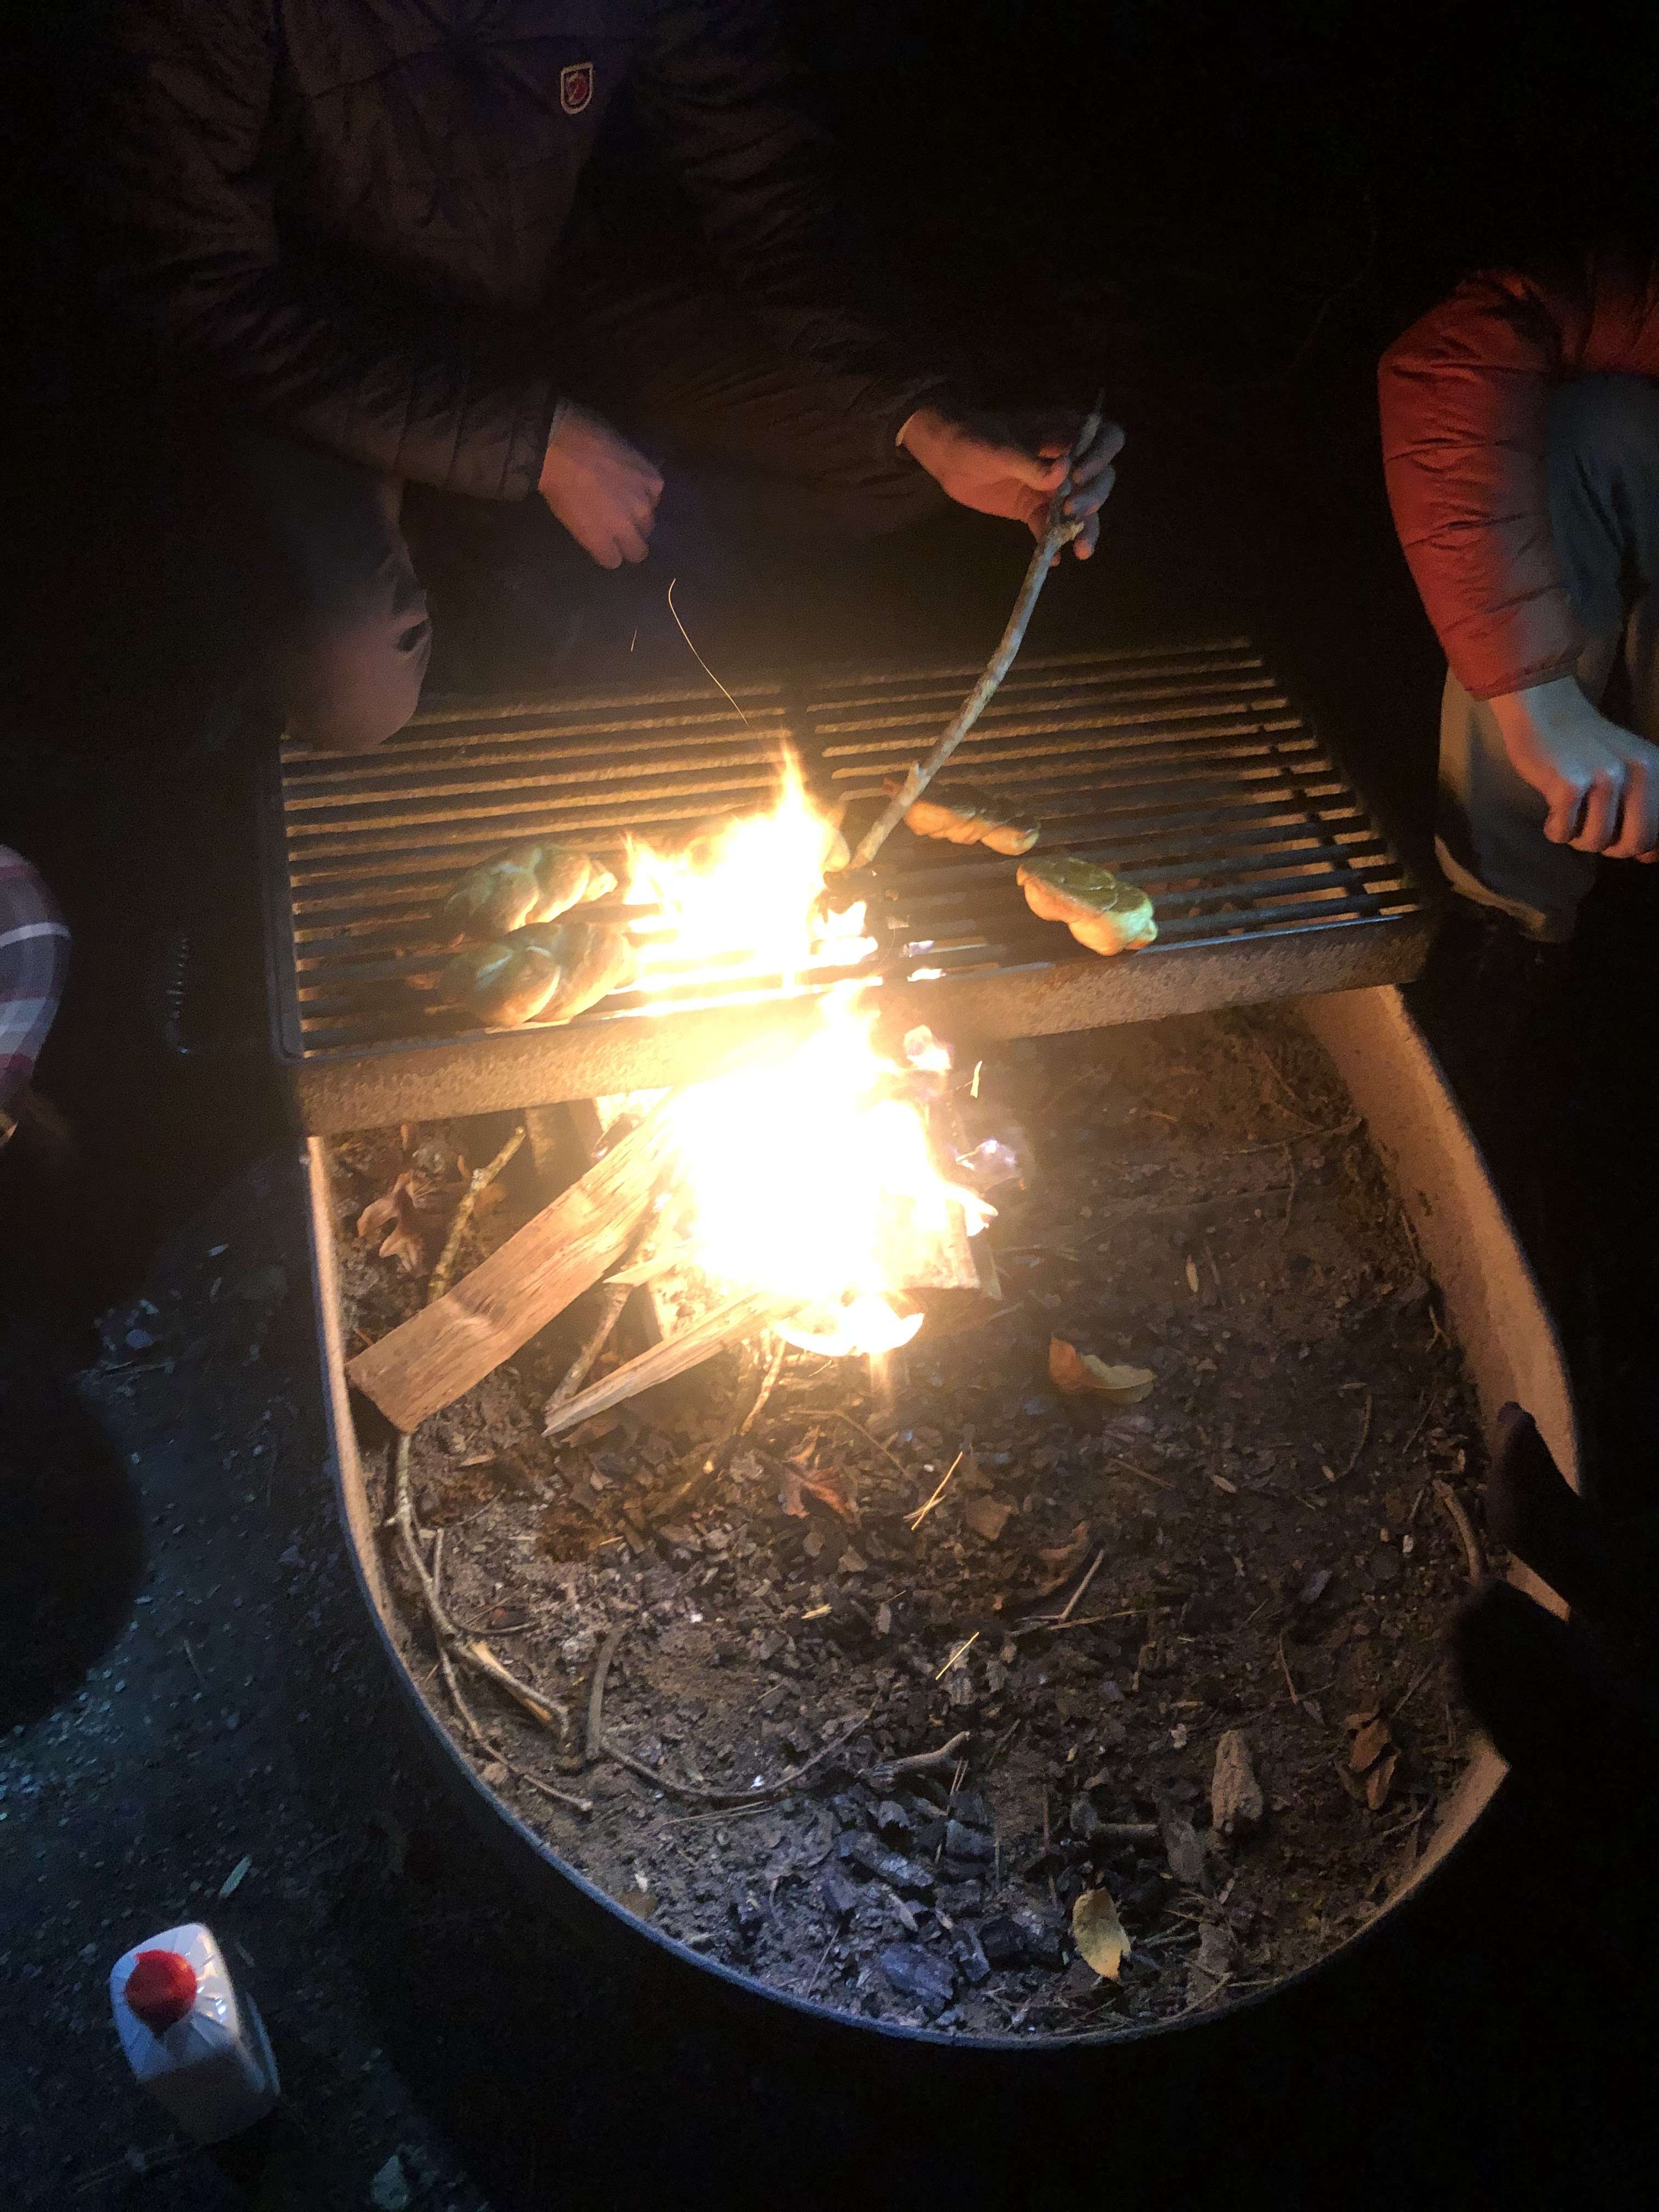 Campfire treats